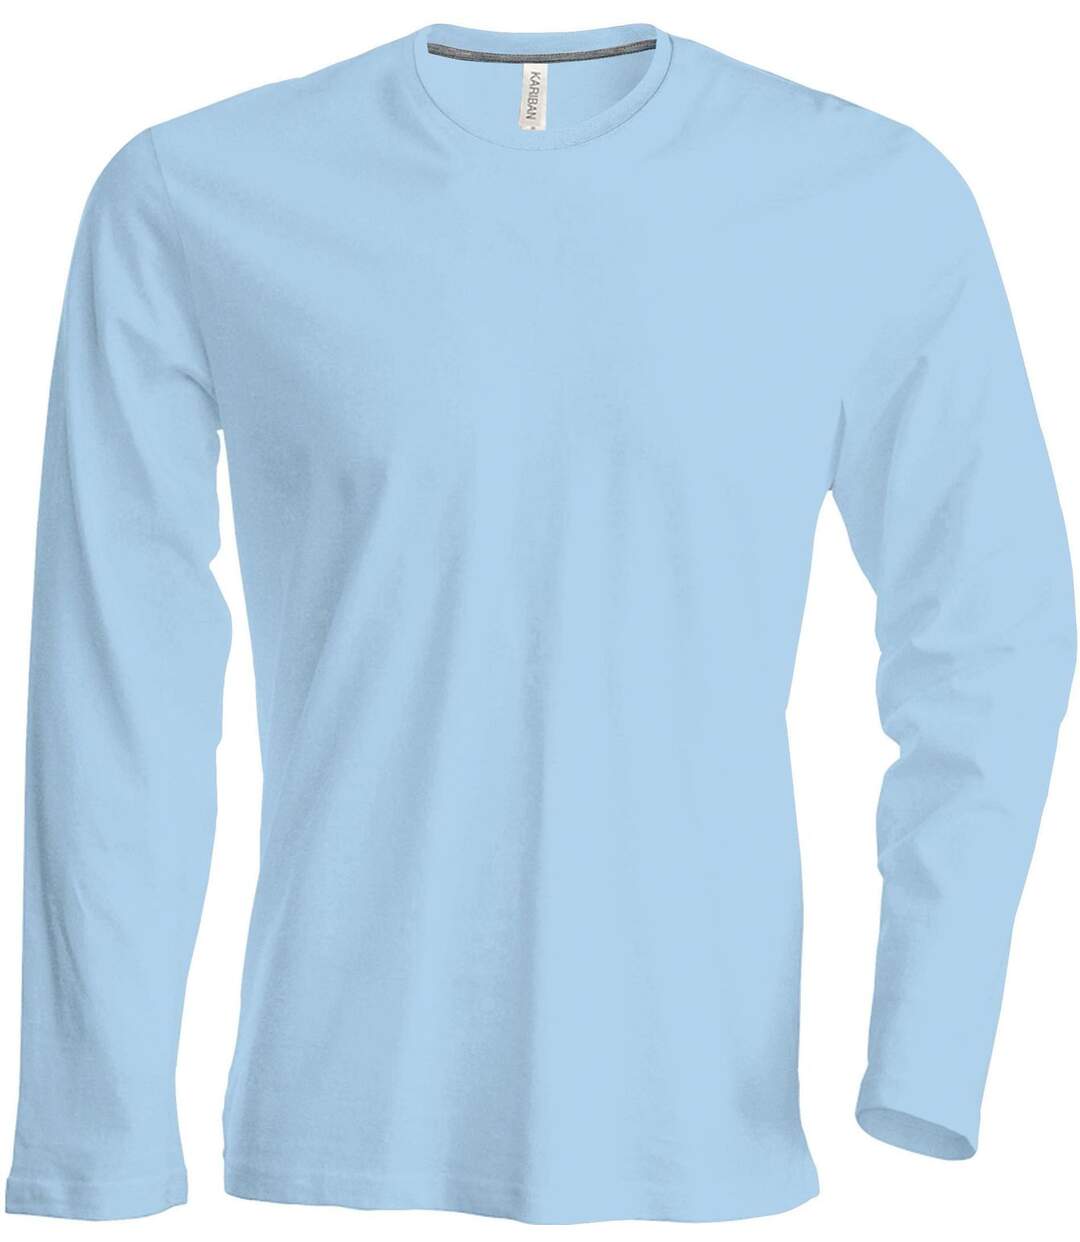 T-shirt manches longues col rond - K359 - bleu ciel - homme